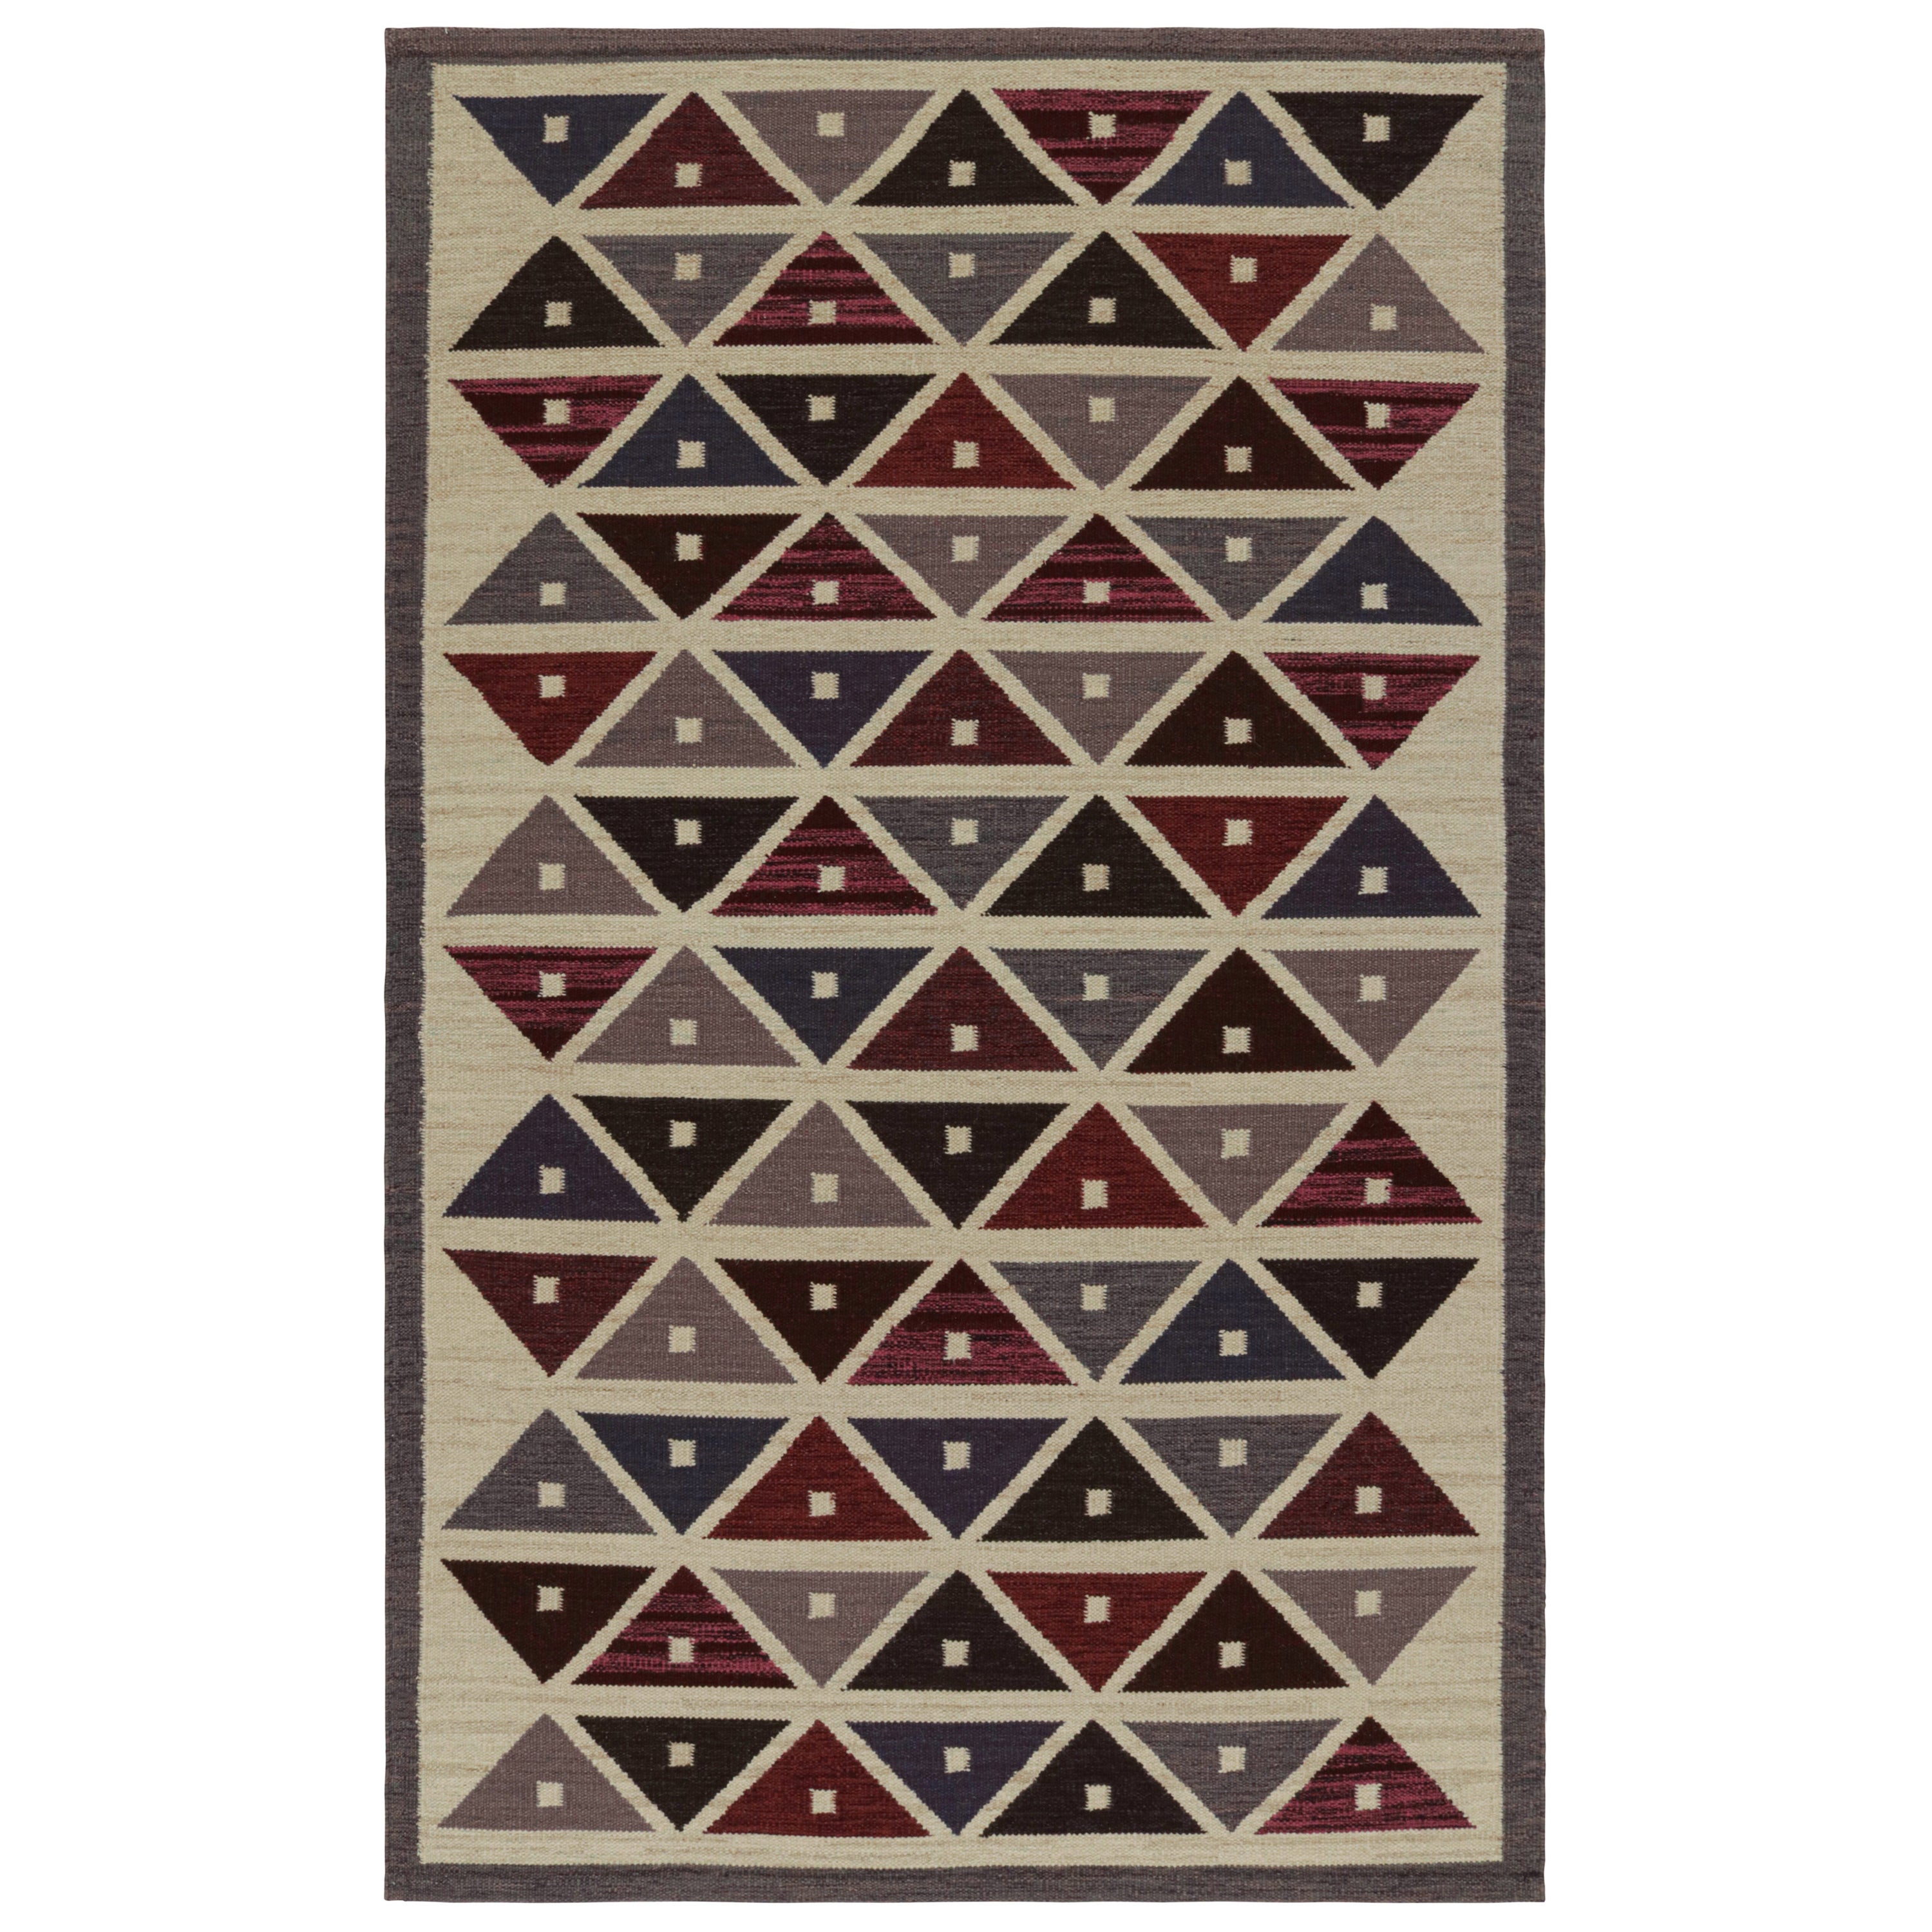 Rug & Kilim's Scandinavian Style Kilim Rug, in Beige, with Geometric Patterns (tapis de style scandinave à motifs géométriques)